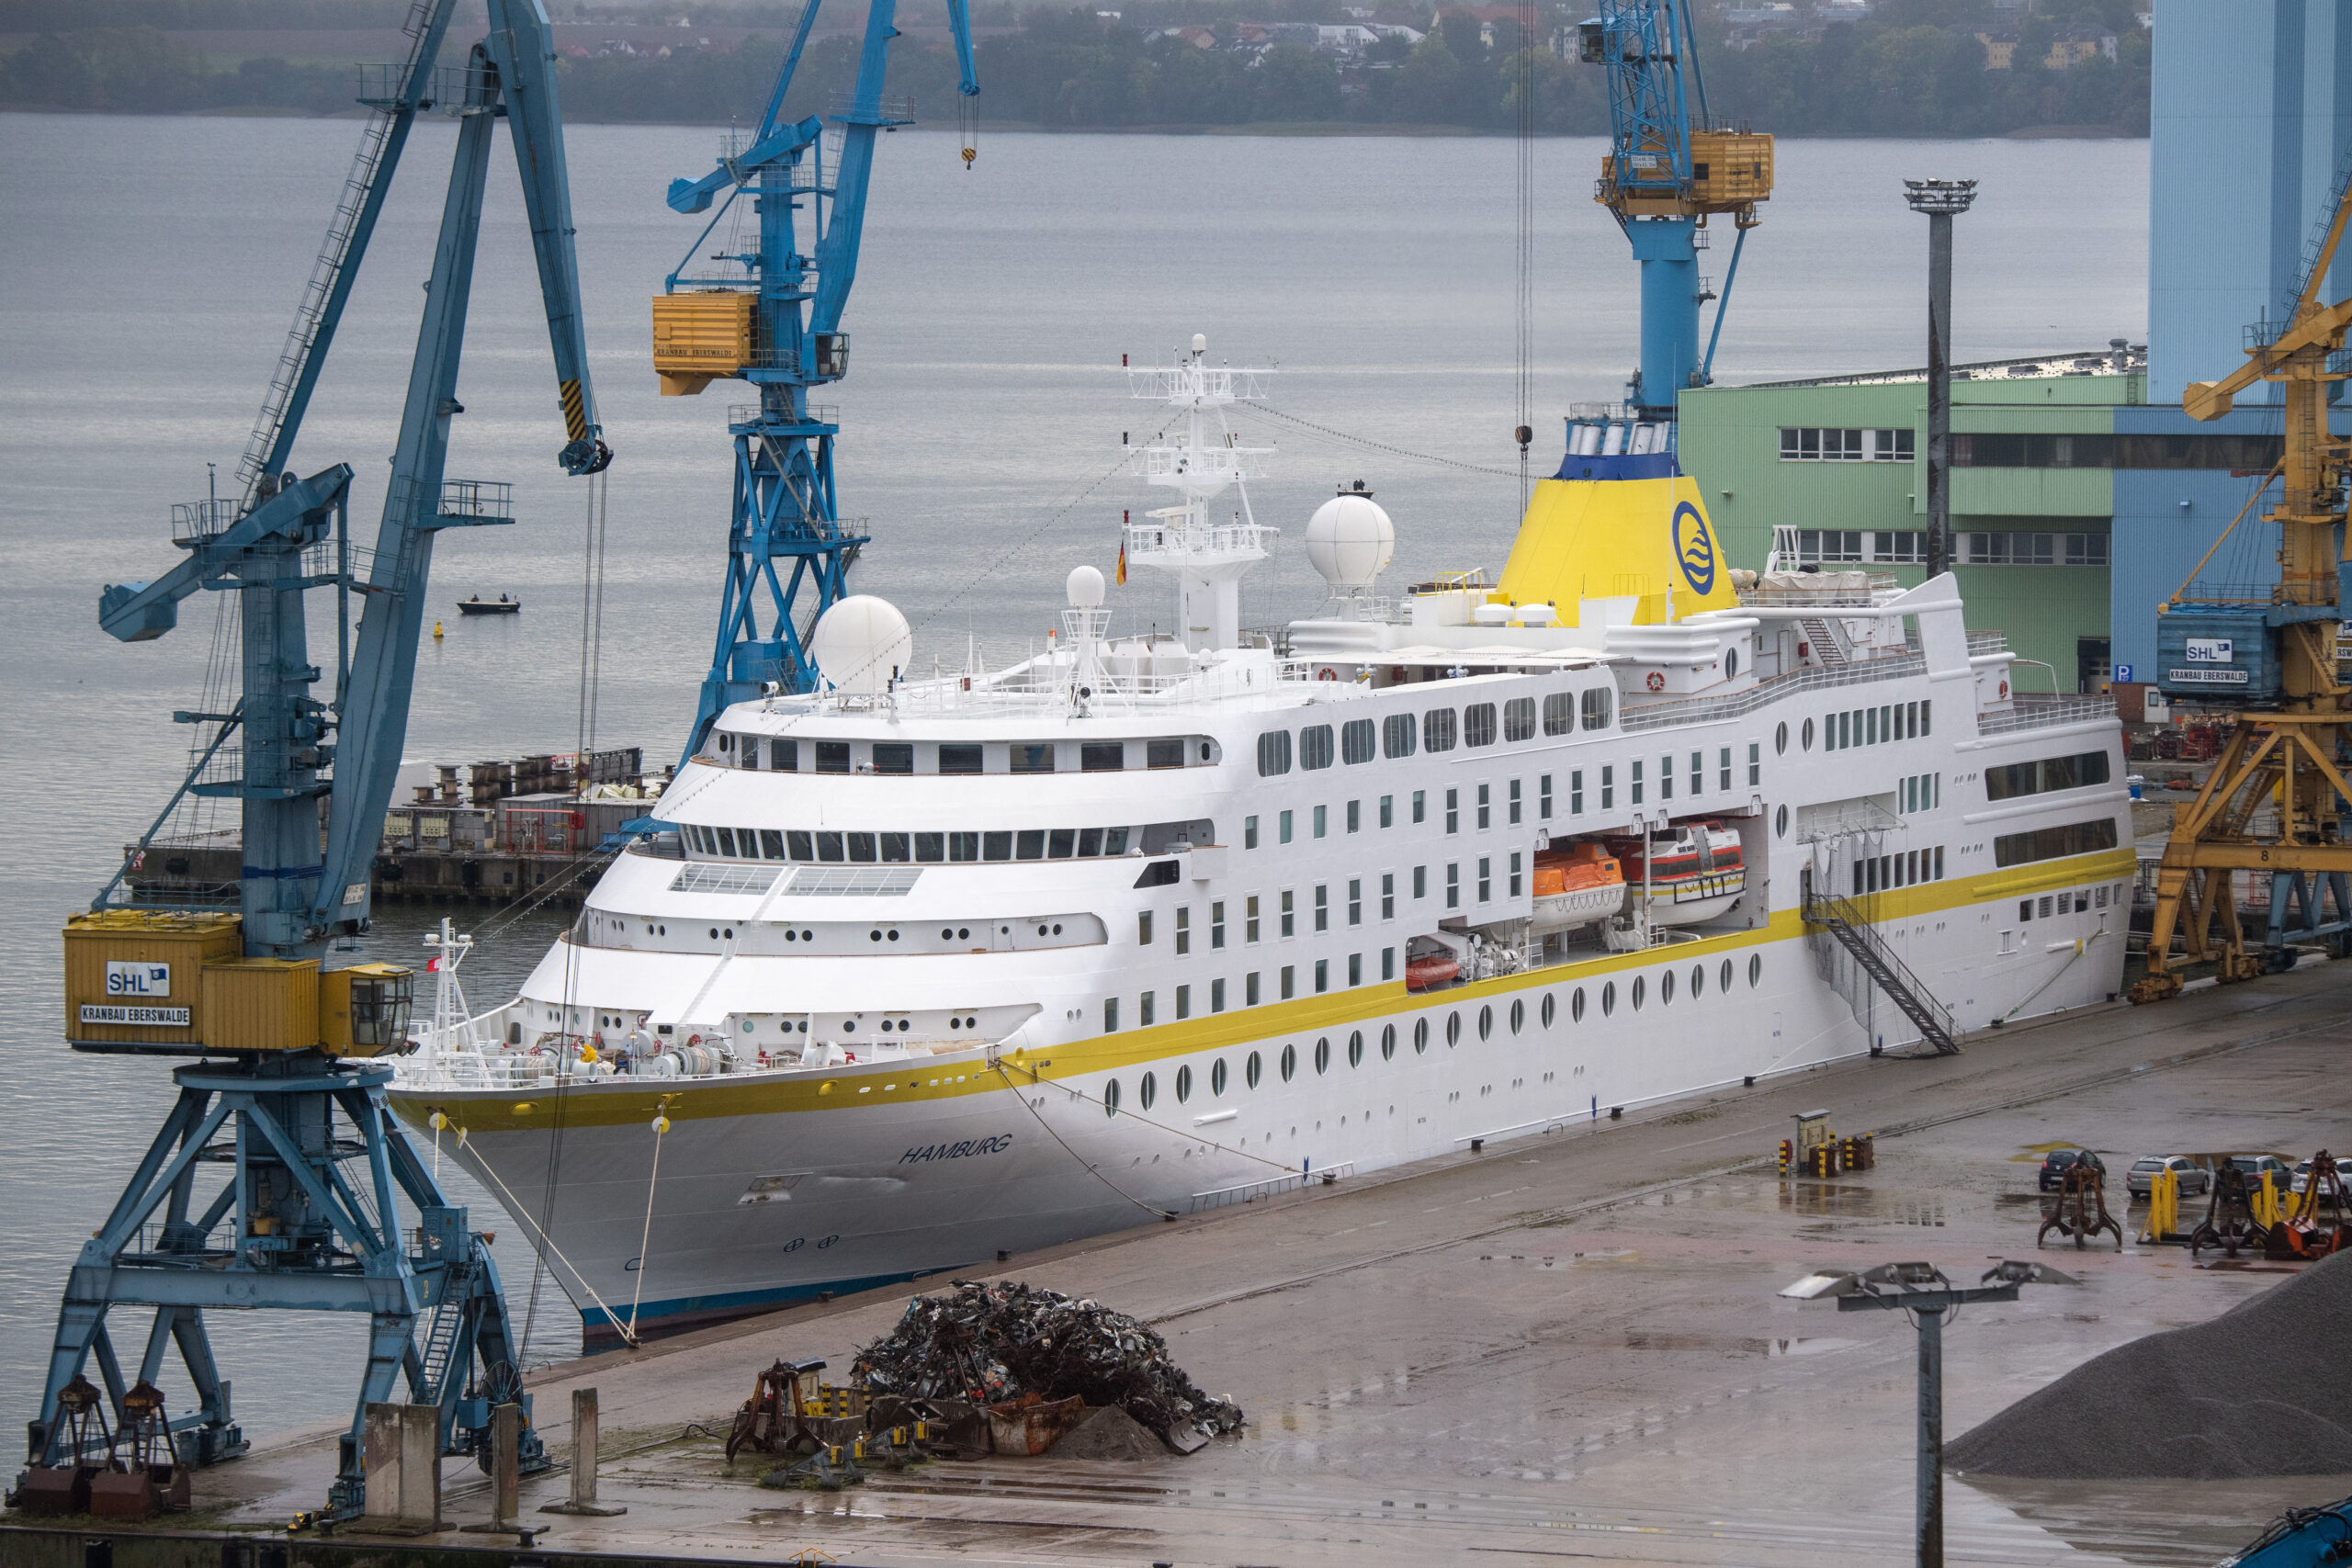 Archivbild: Das Kreuzfahrtschiff MS Hamburg liegt im Hafen von Stralsund.